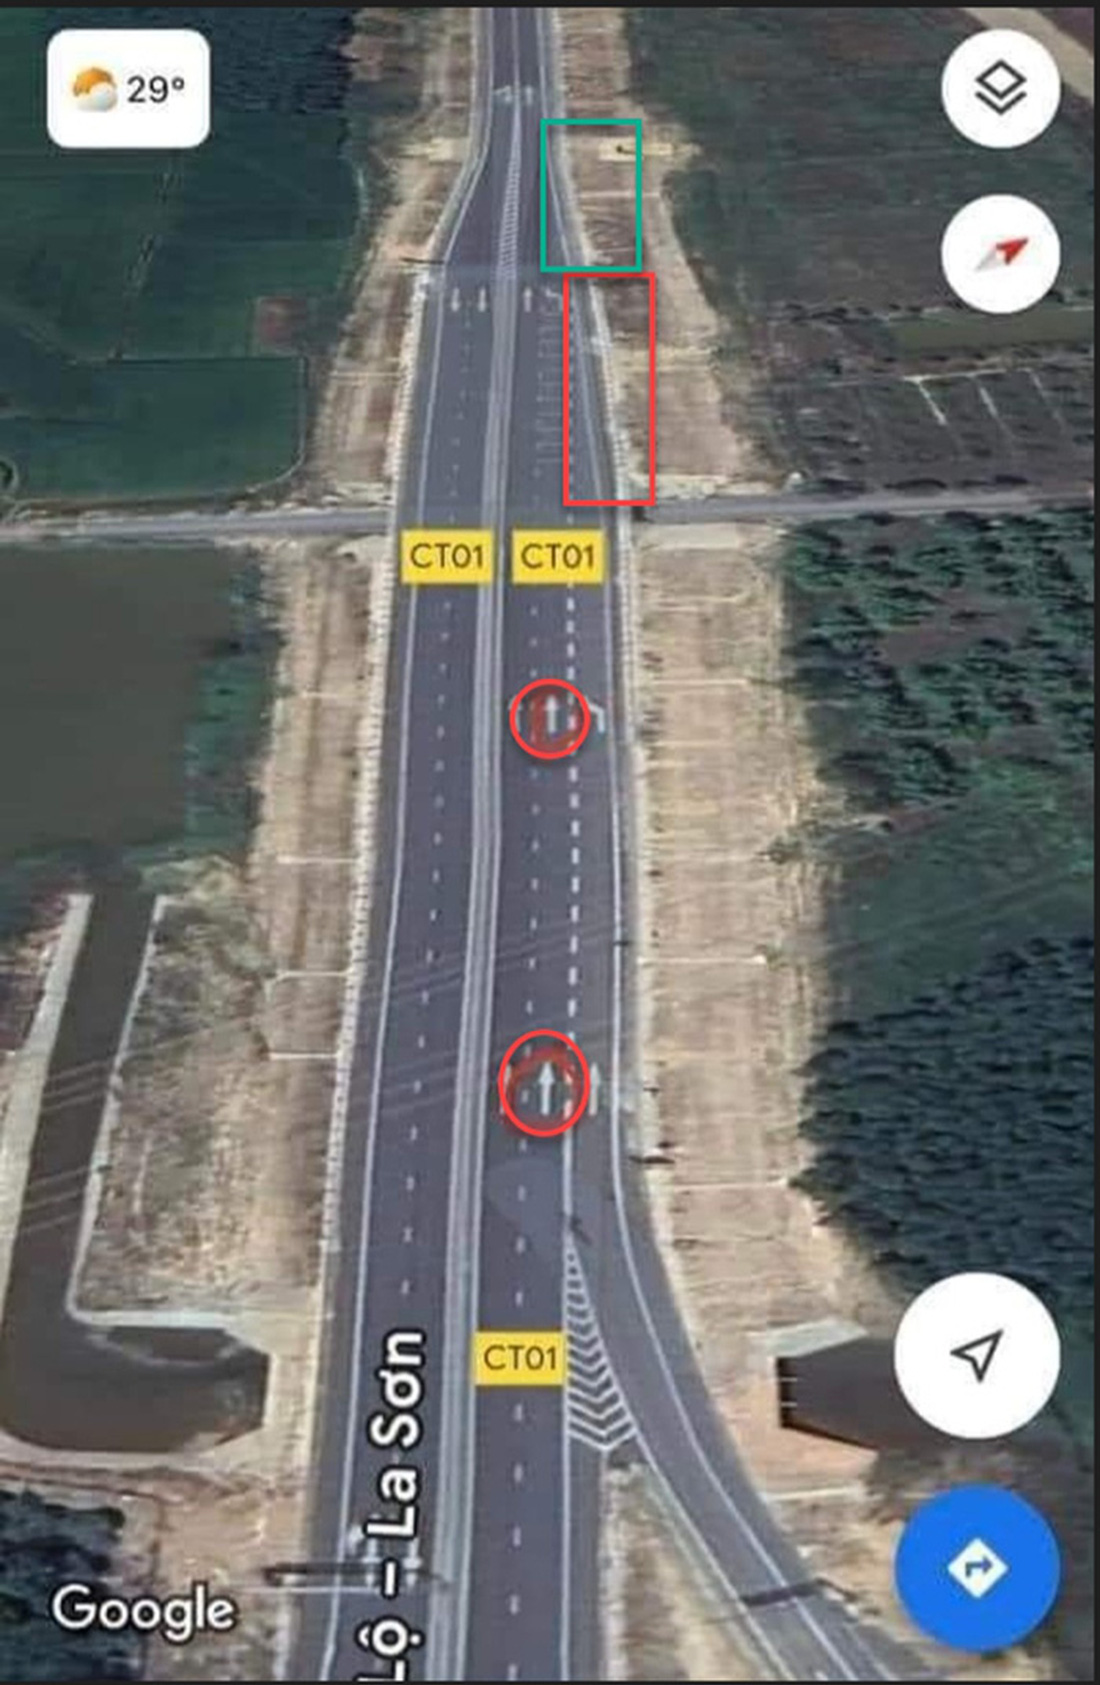 Tiến sĩ xây dựng bàn thiết kế nút cổ chai trên cao tốc Cam Lộ - La Sơn: Cần cảnh báo rõ ràng hơn- Ảnh 7.